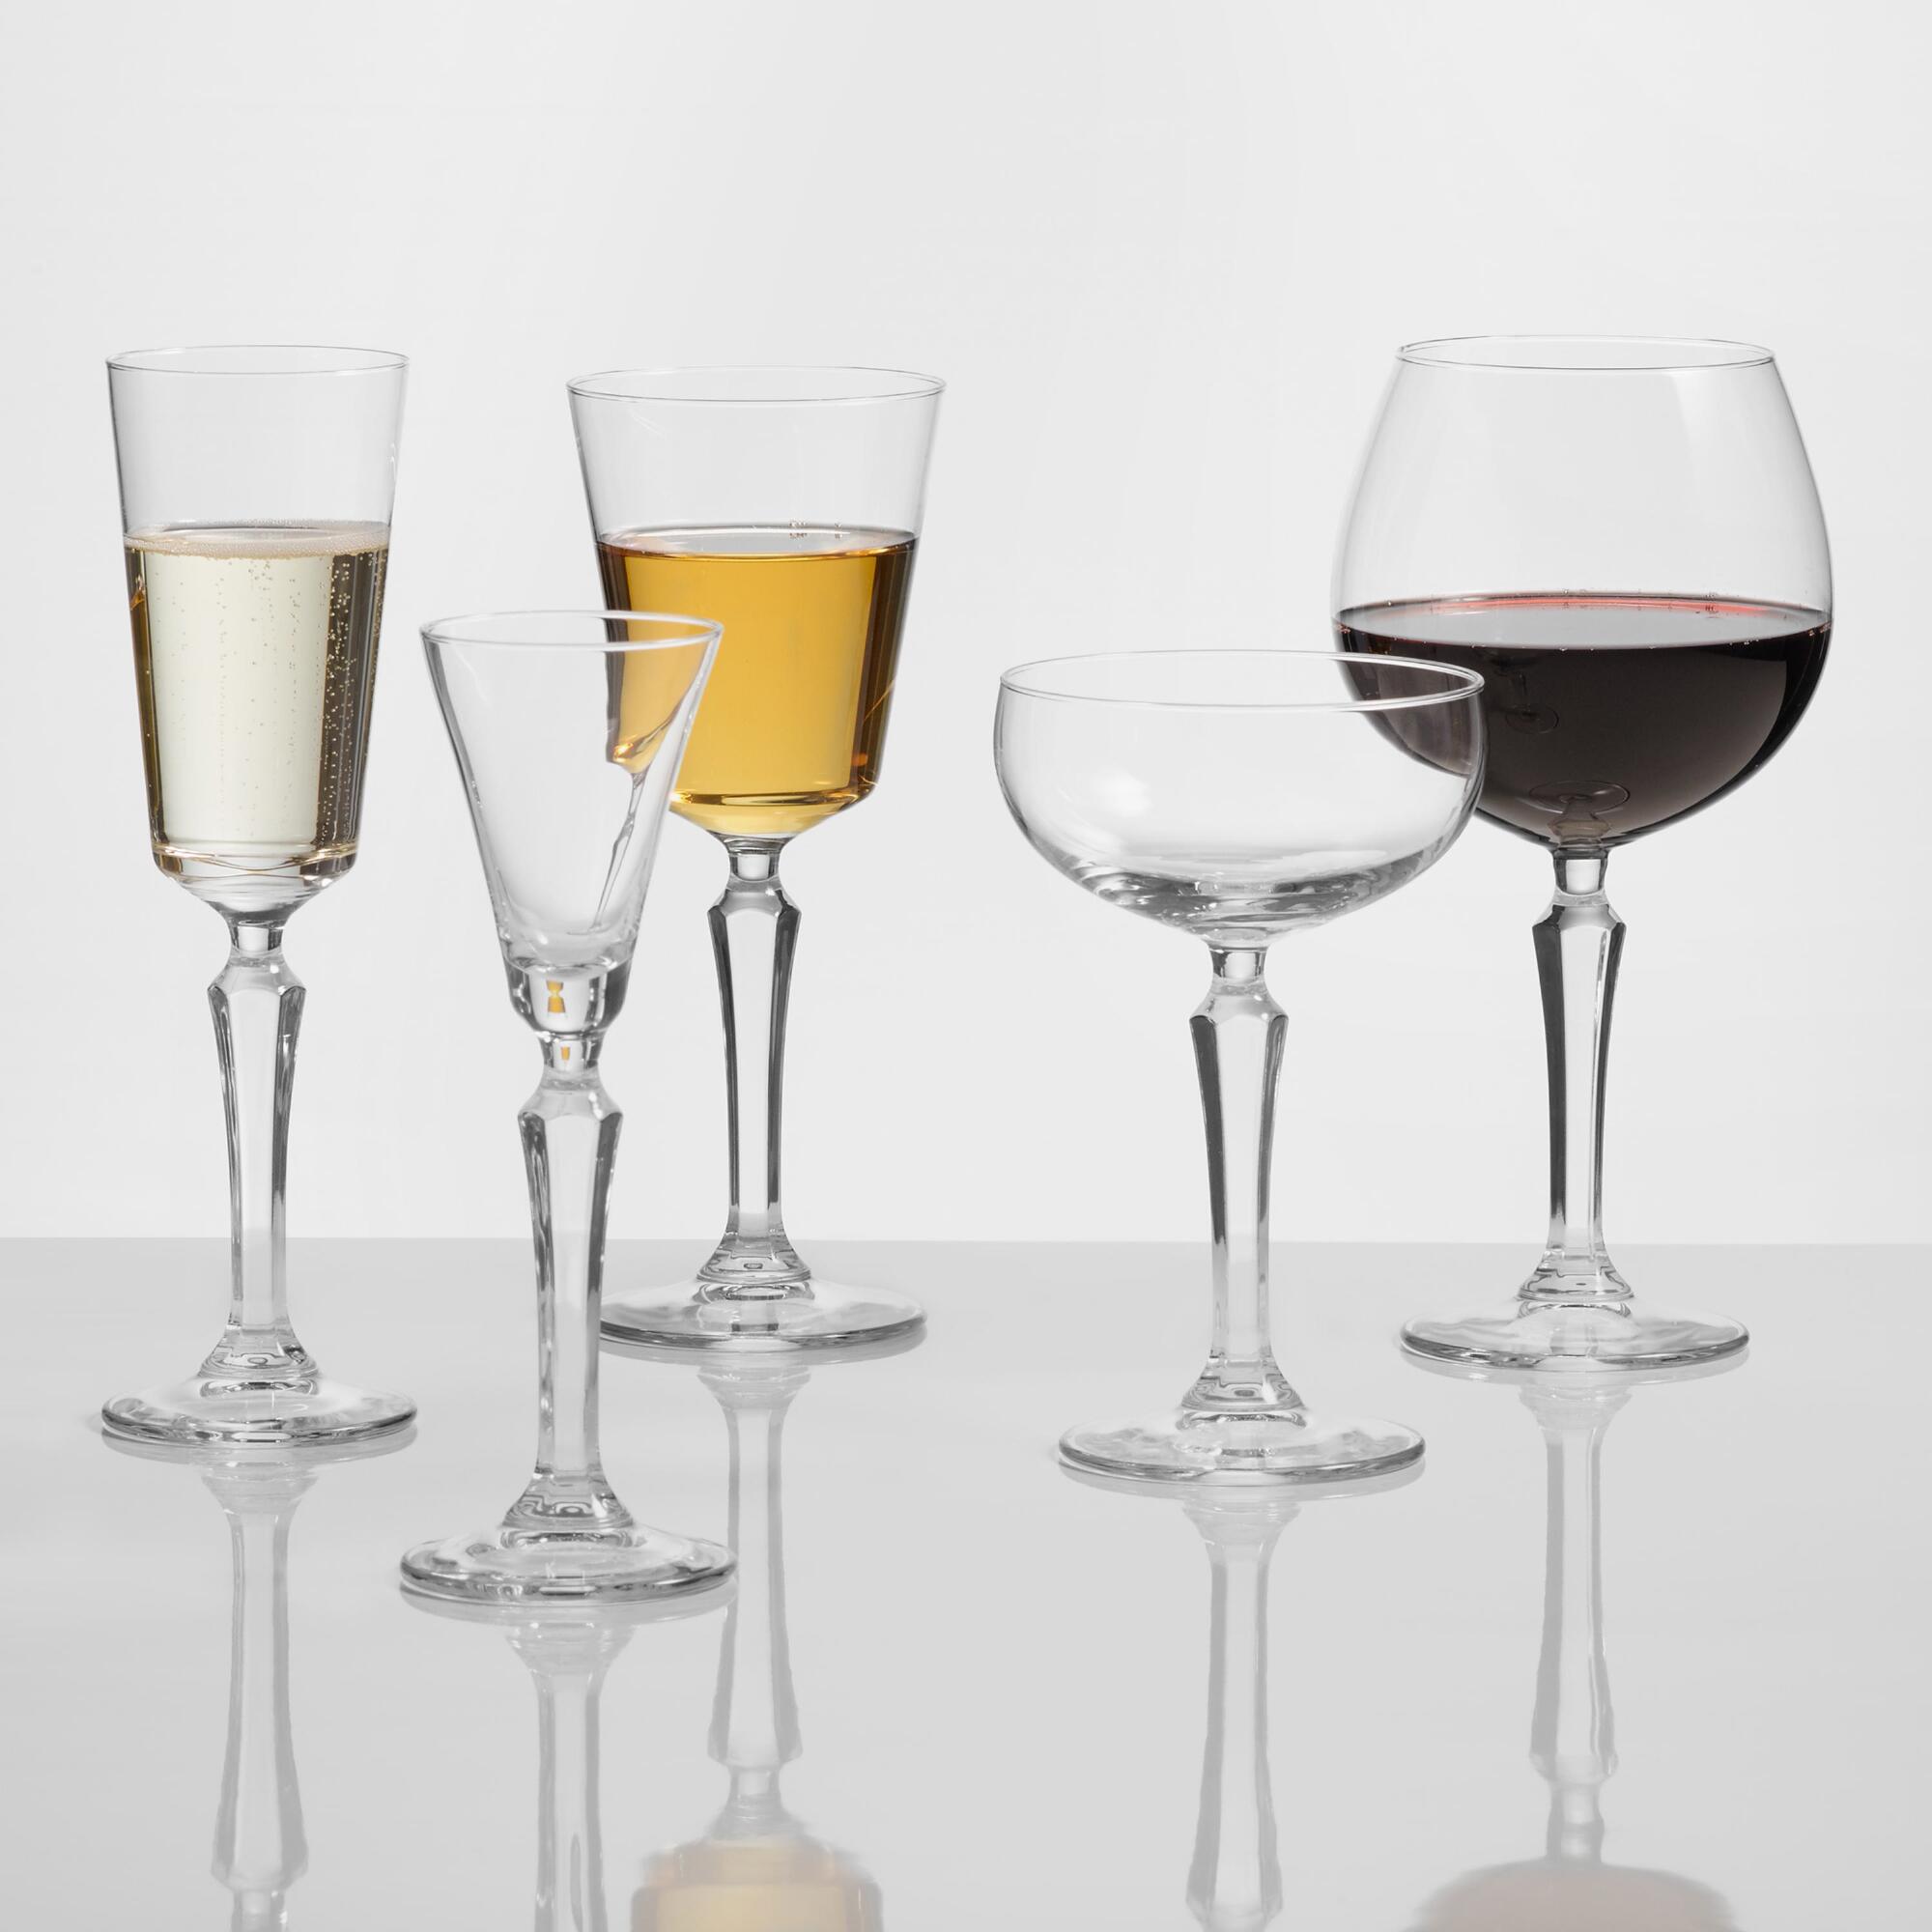 Speakeasy Glassware Collection by World Market